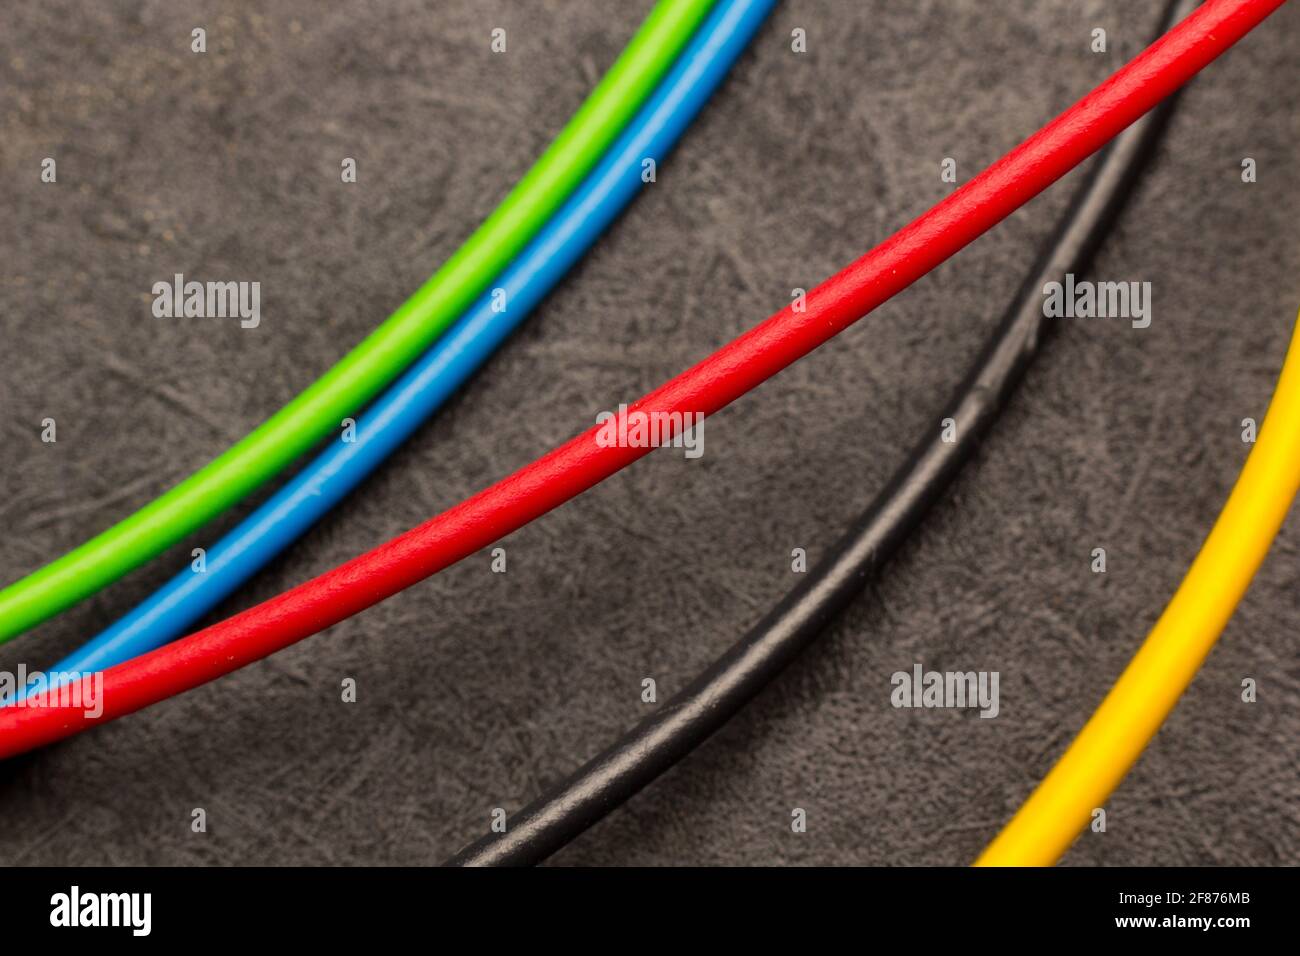 Farbige elektrische Kabel; Grundfarben bei elektrischen Kabeln. Kabelreste; kleine Stücke farbiger Drähte; elektrische Drähte. Stockfoto